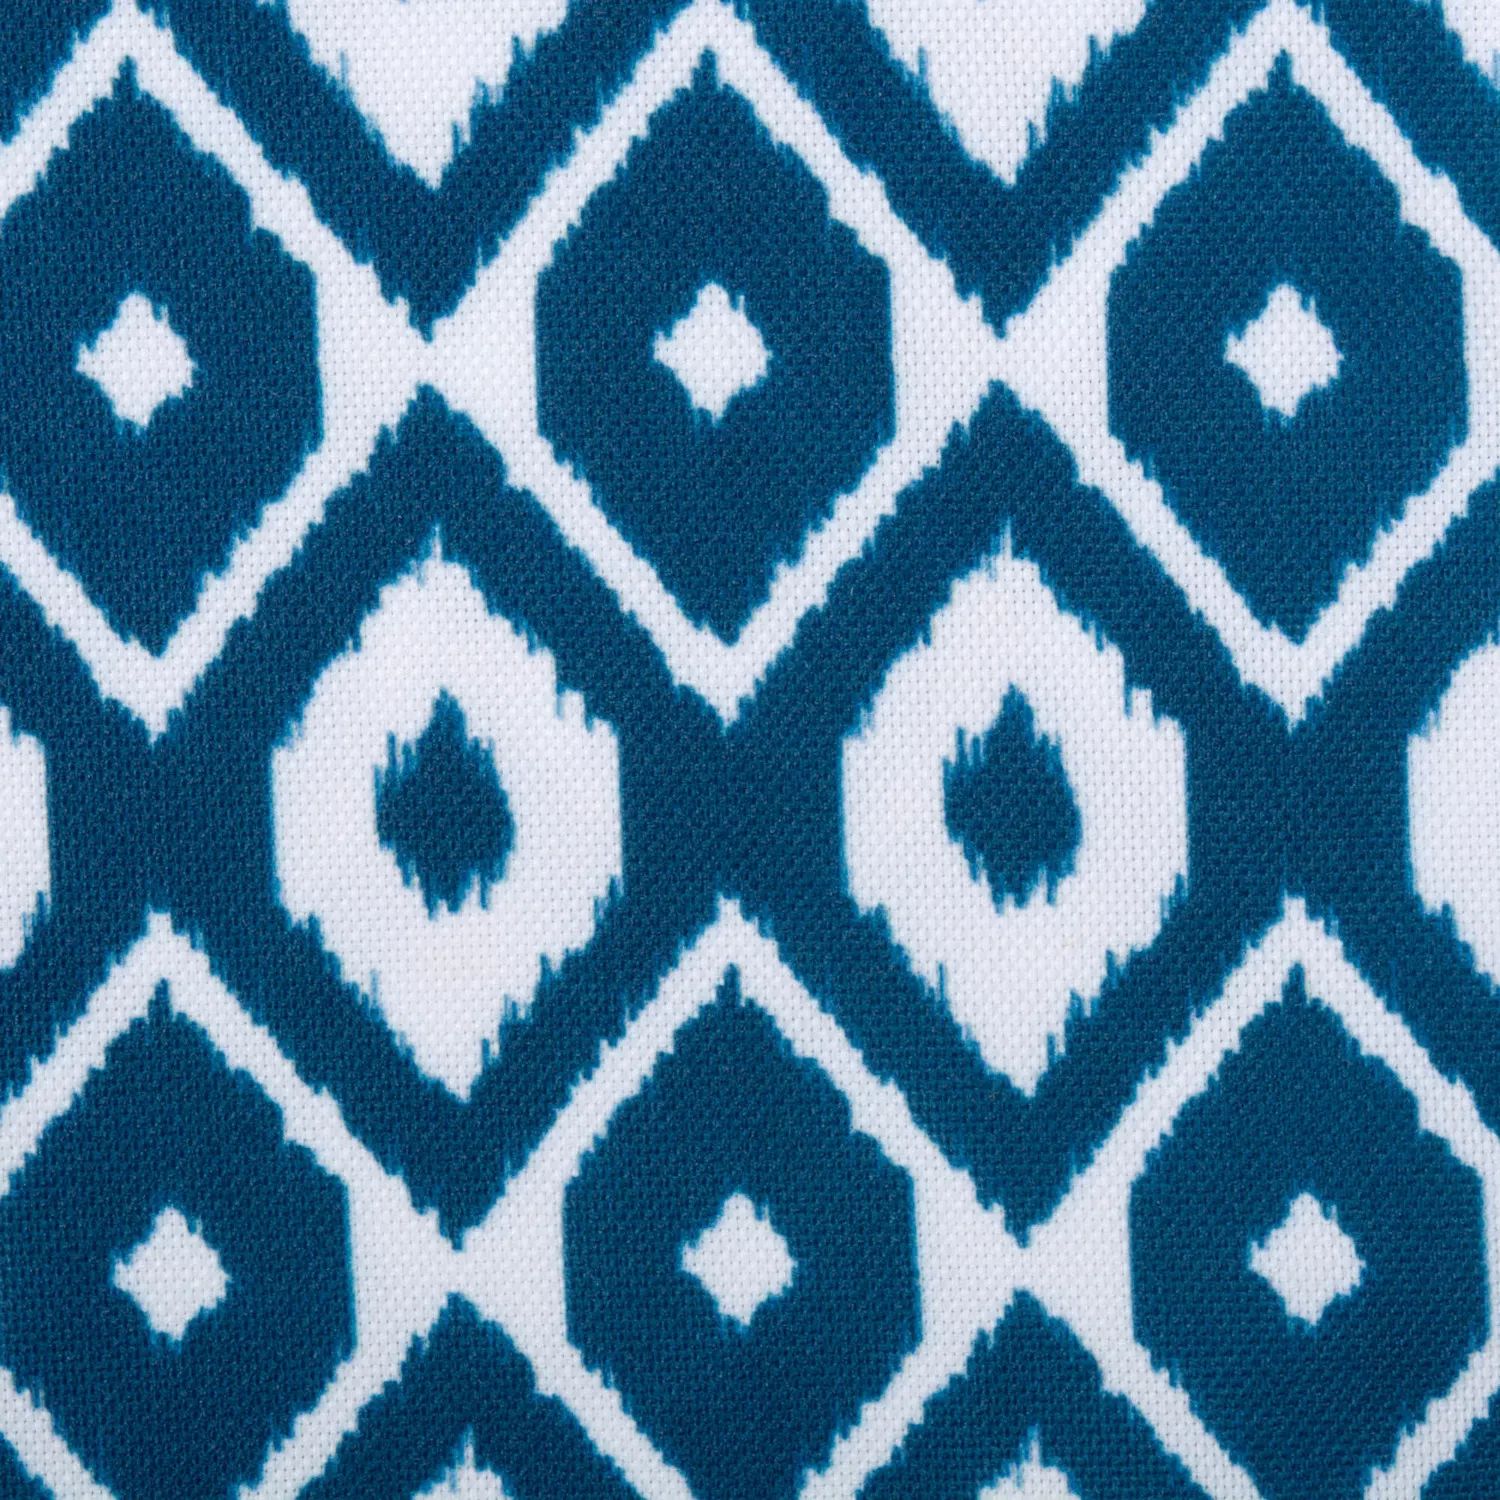 Прямоугольная скатерть с сине-белым рисунком икат размером 60 x 84 дюйма